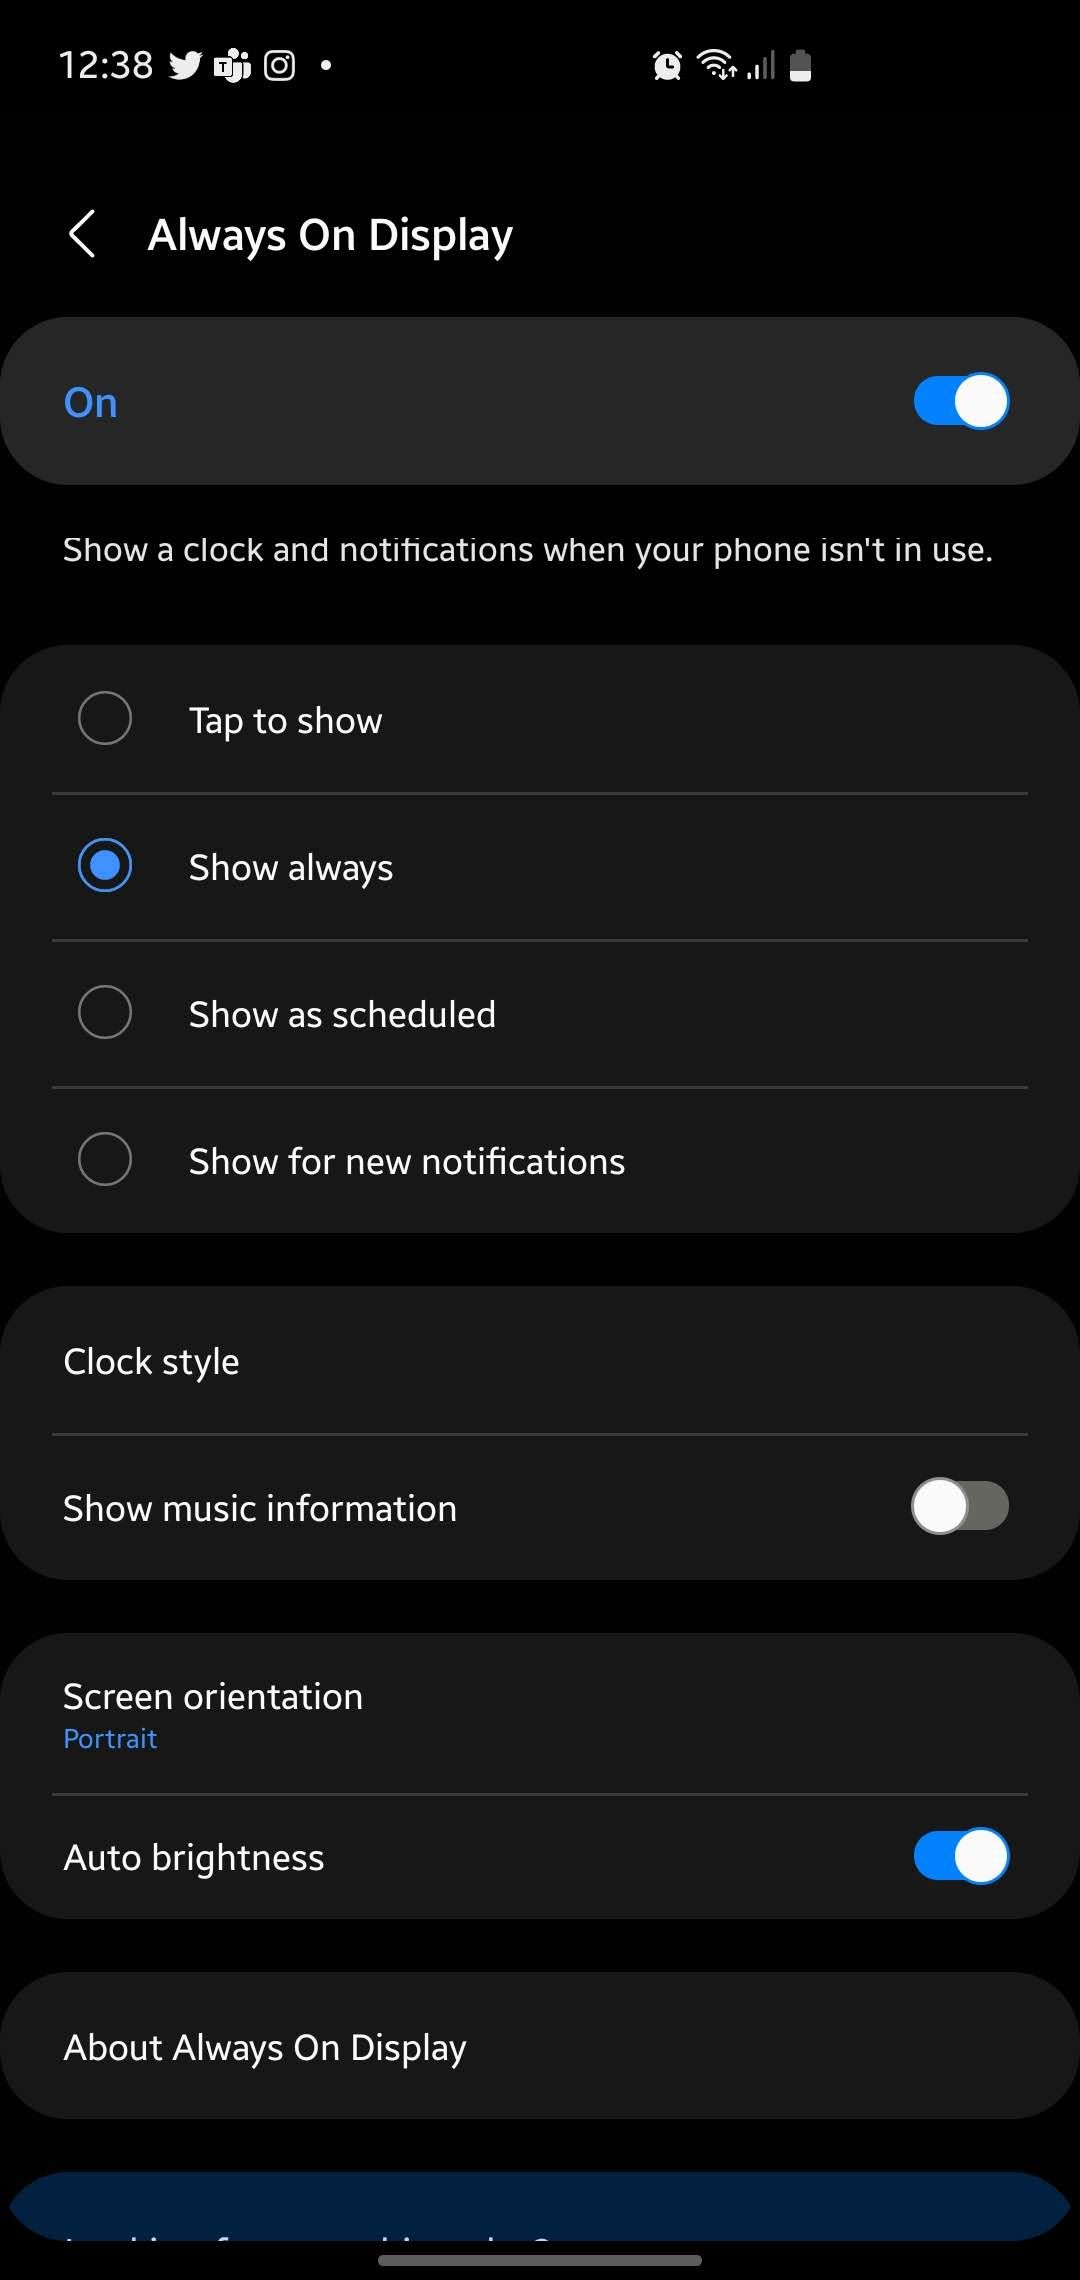 Always On Display app's Display mode settings